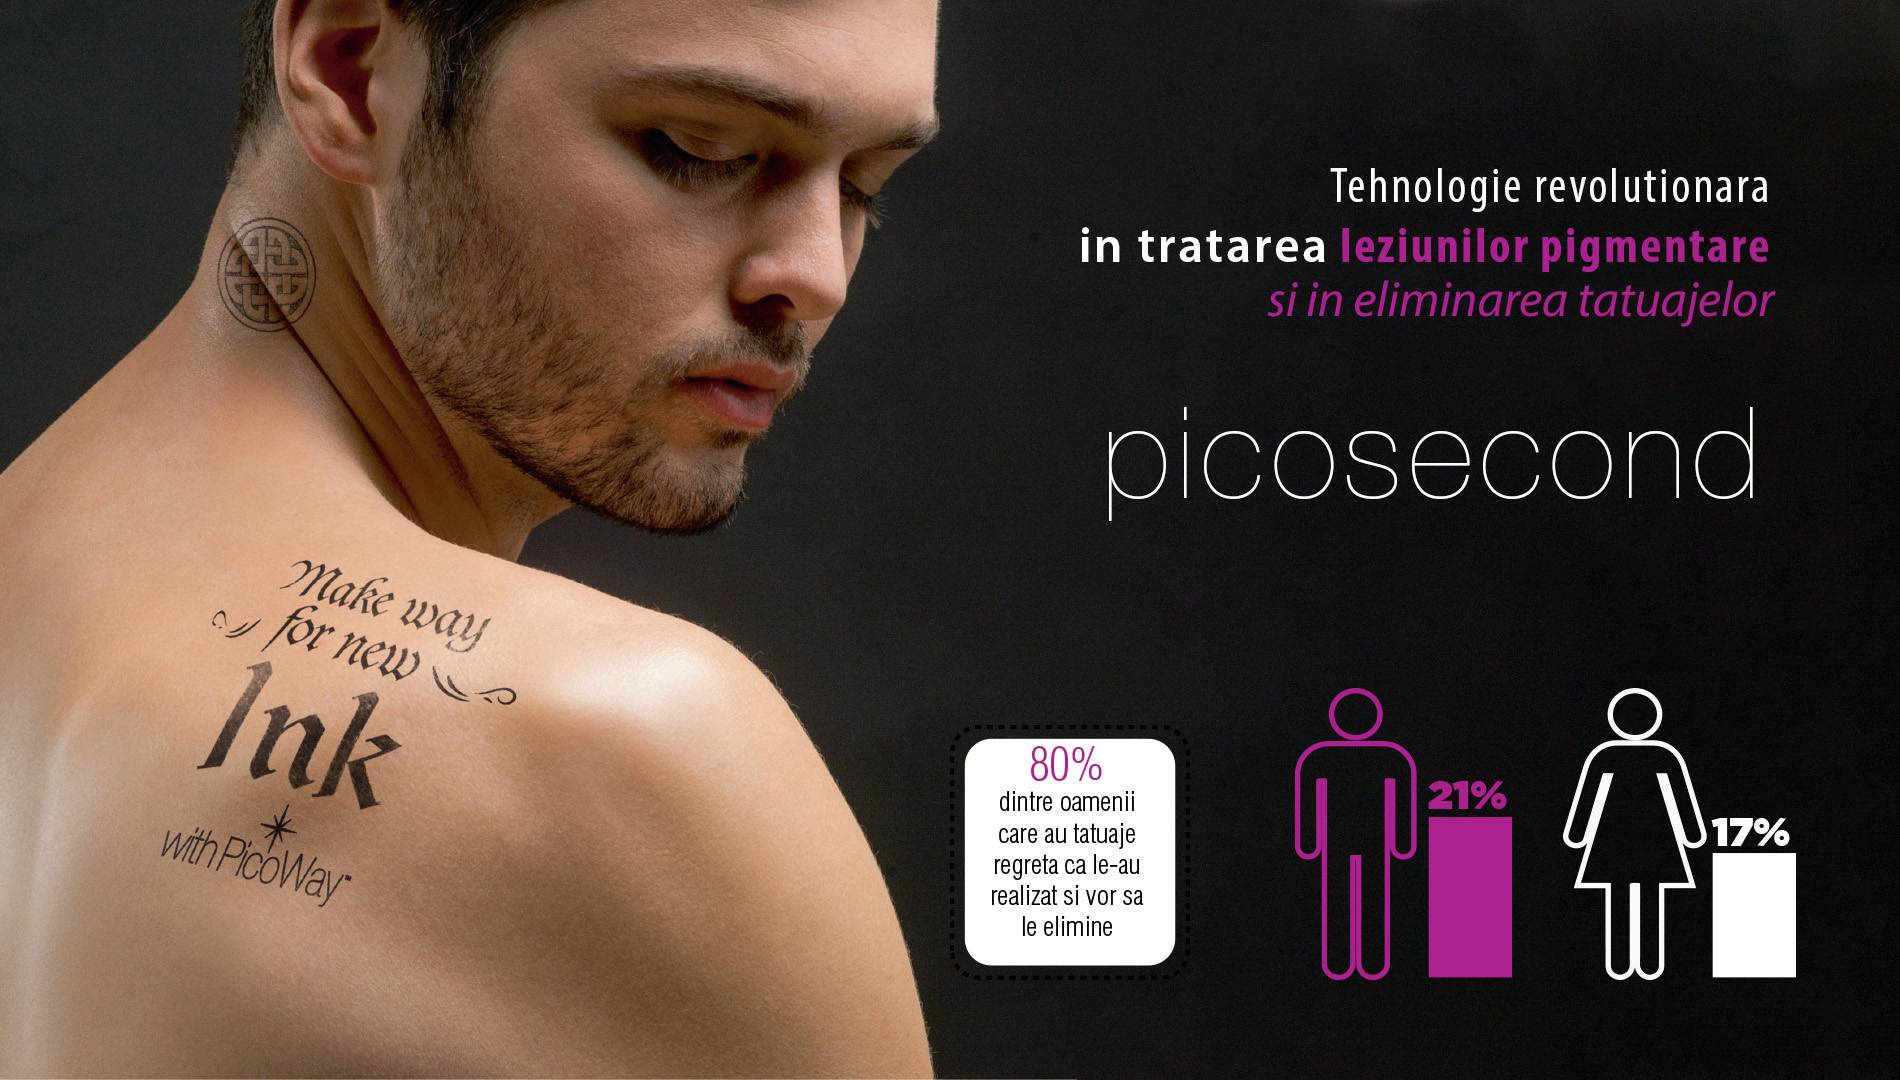 Tehnologia picosecond pentru eliminare tatuaje